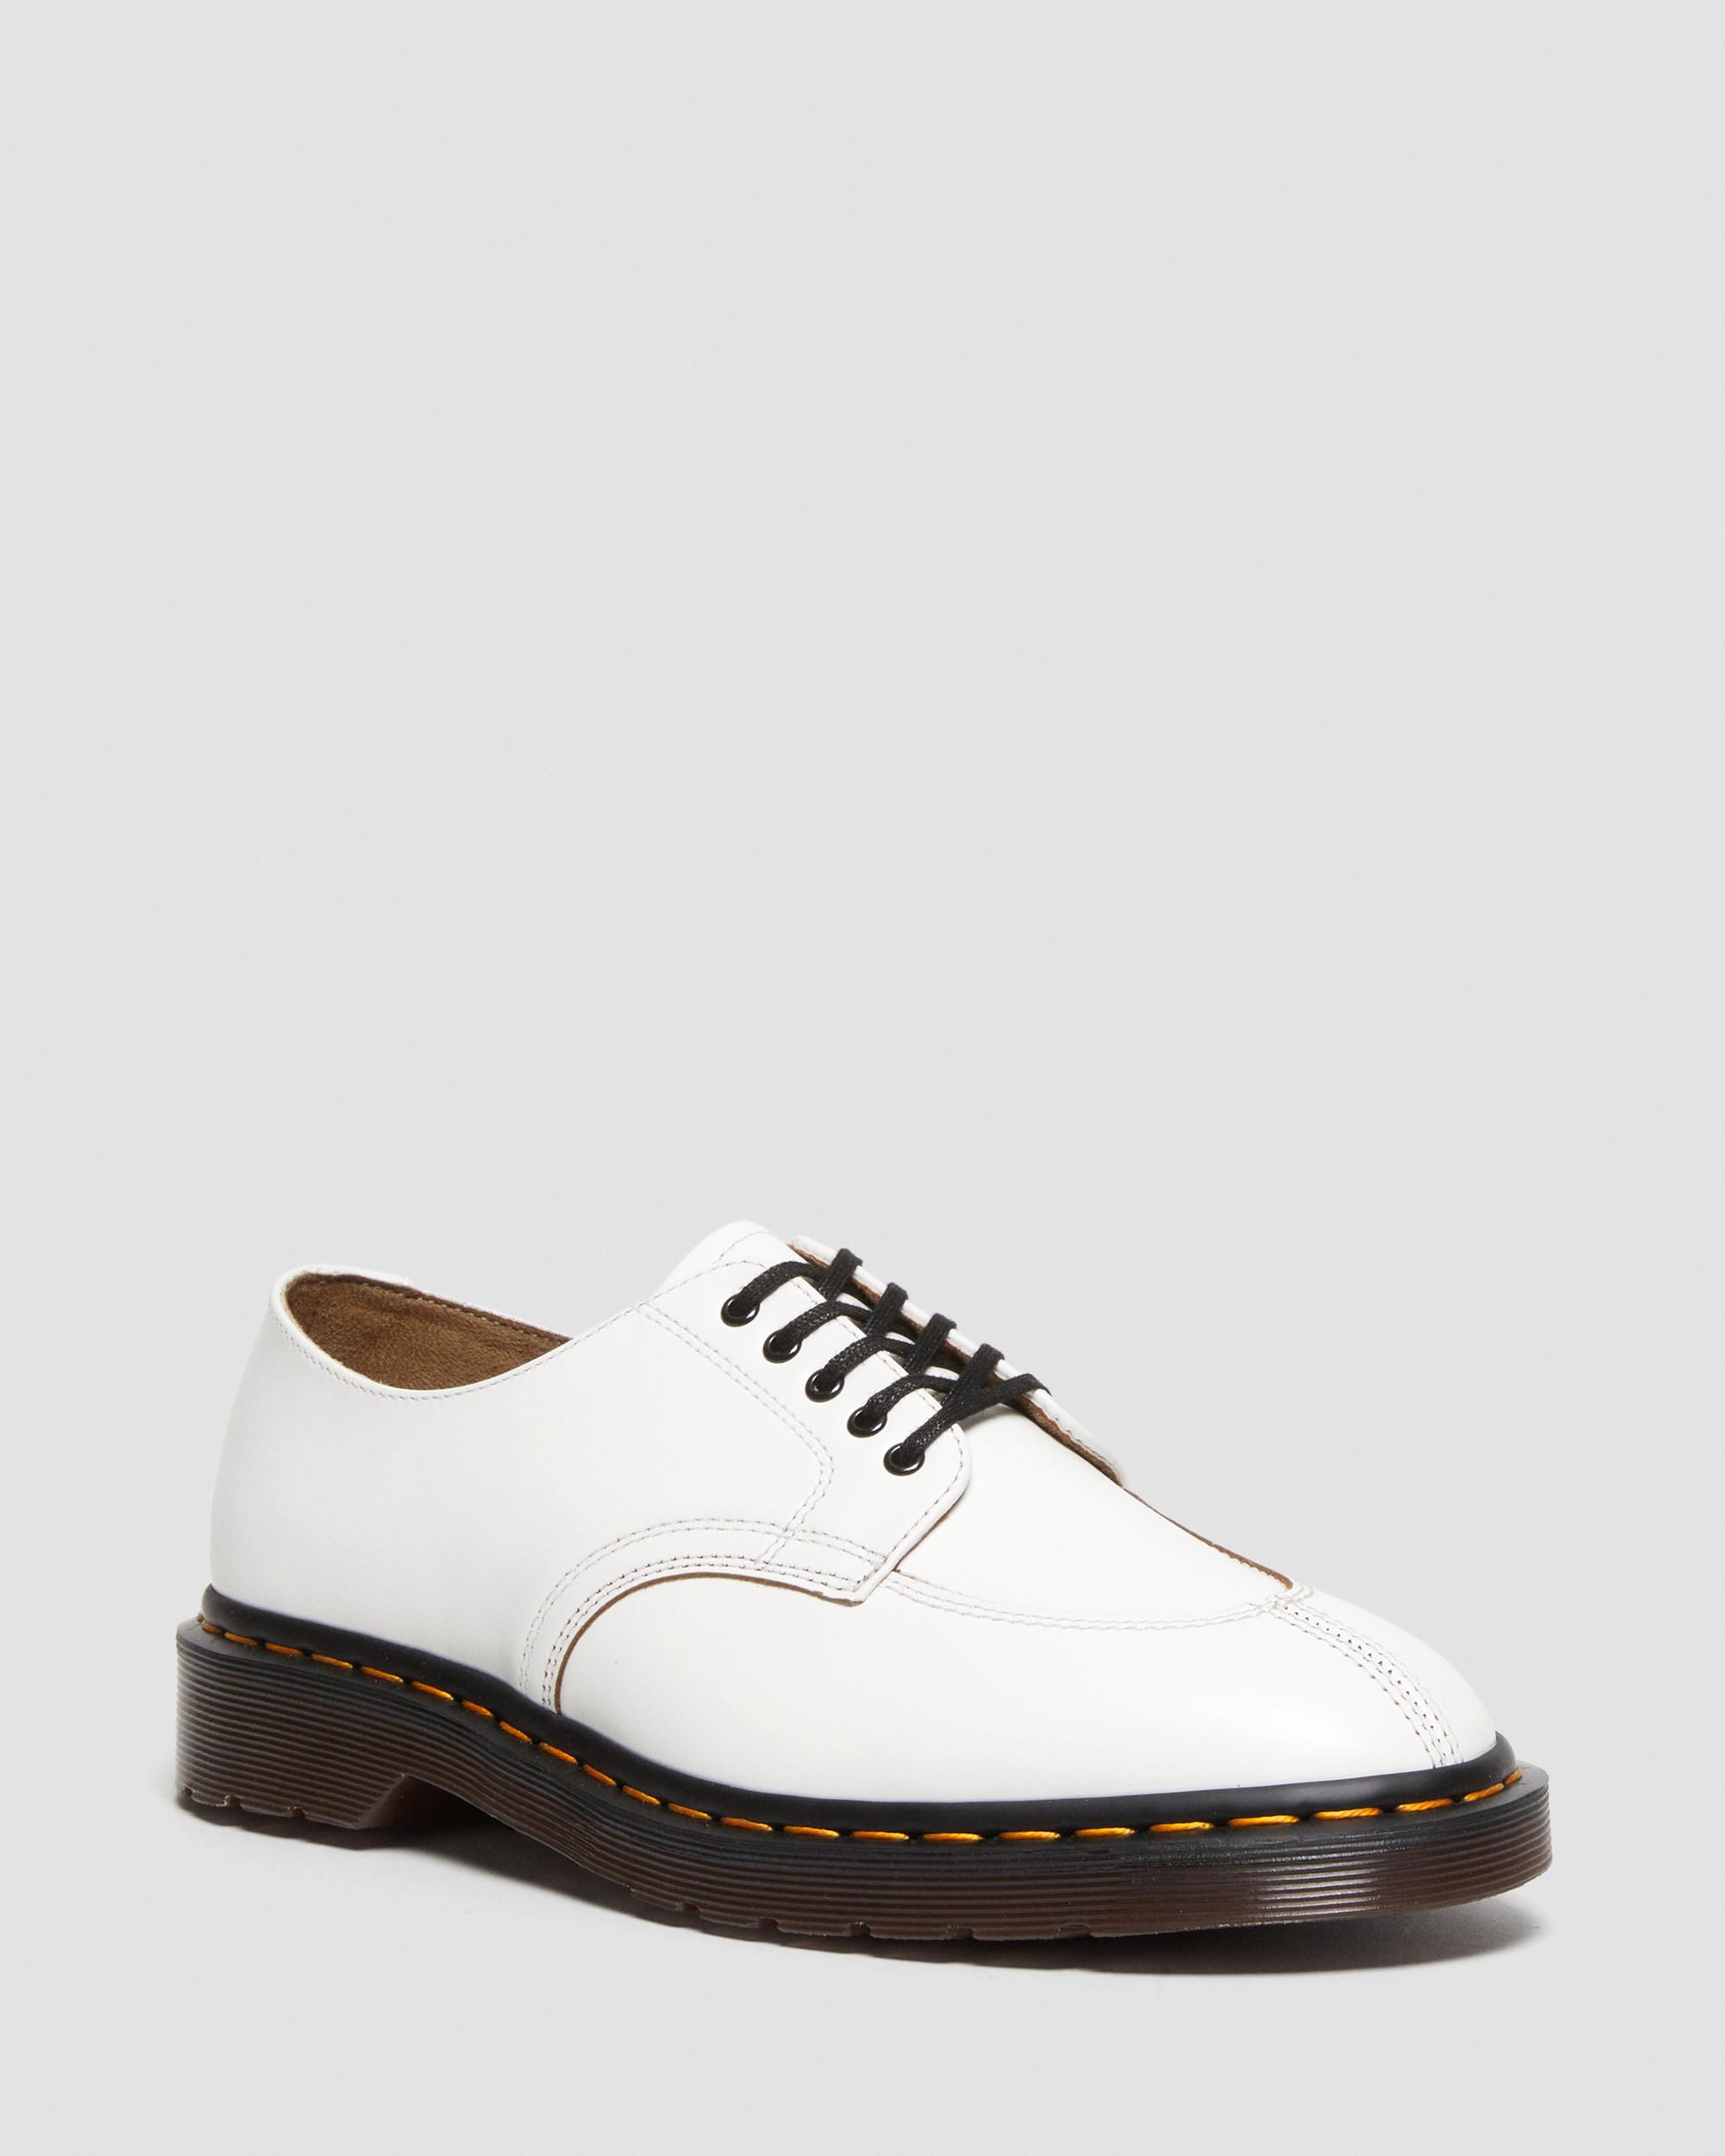 2046 Vintage Smooth Leather Oxford Shoes2046 Vintage Smooth Lædersko Dr. Martens